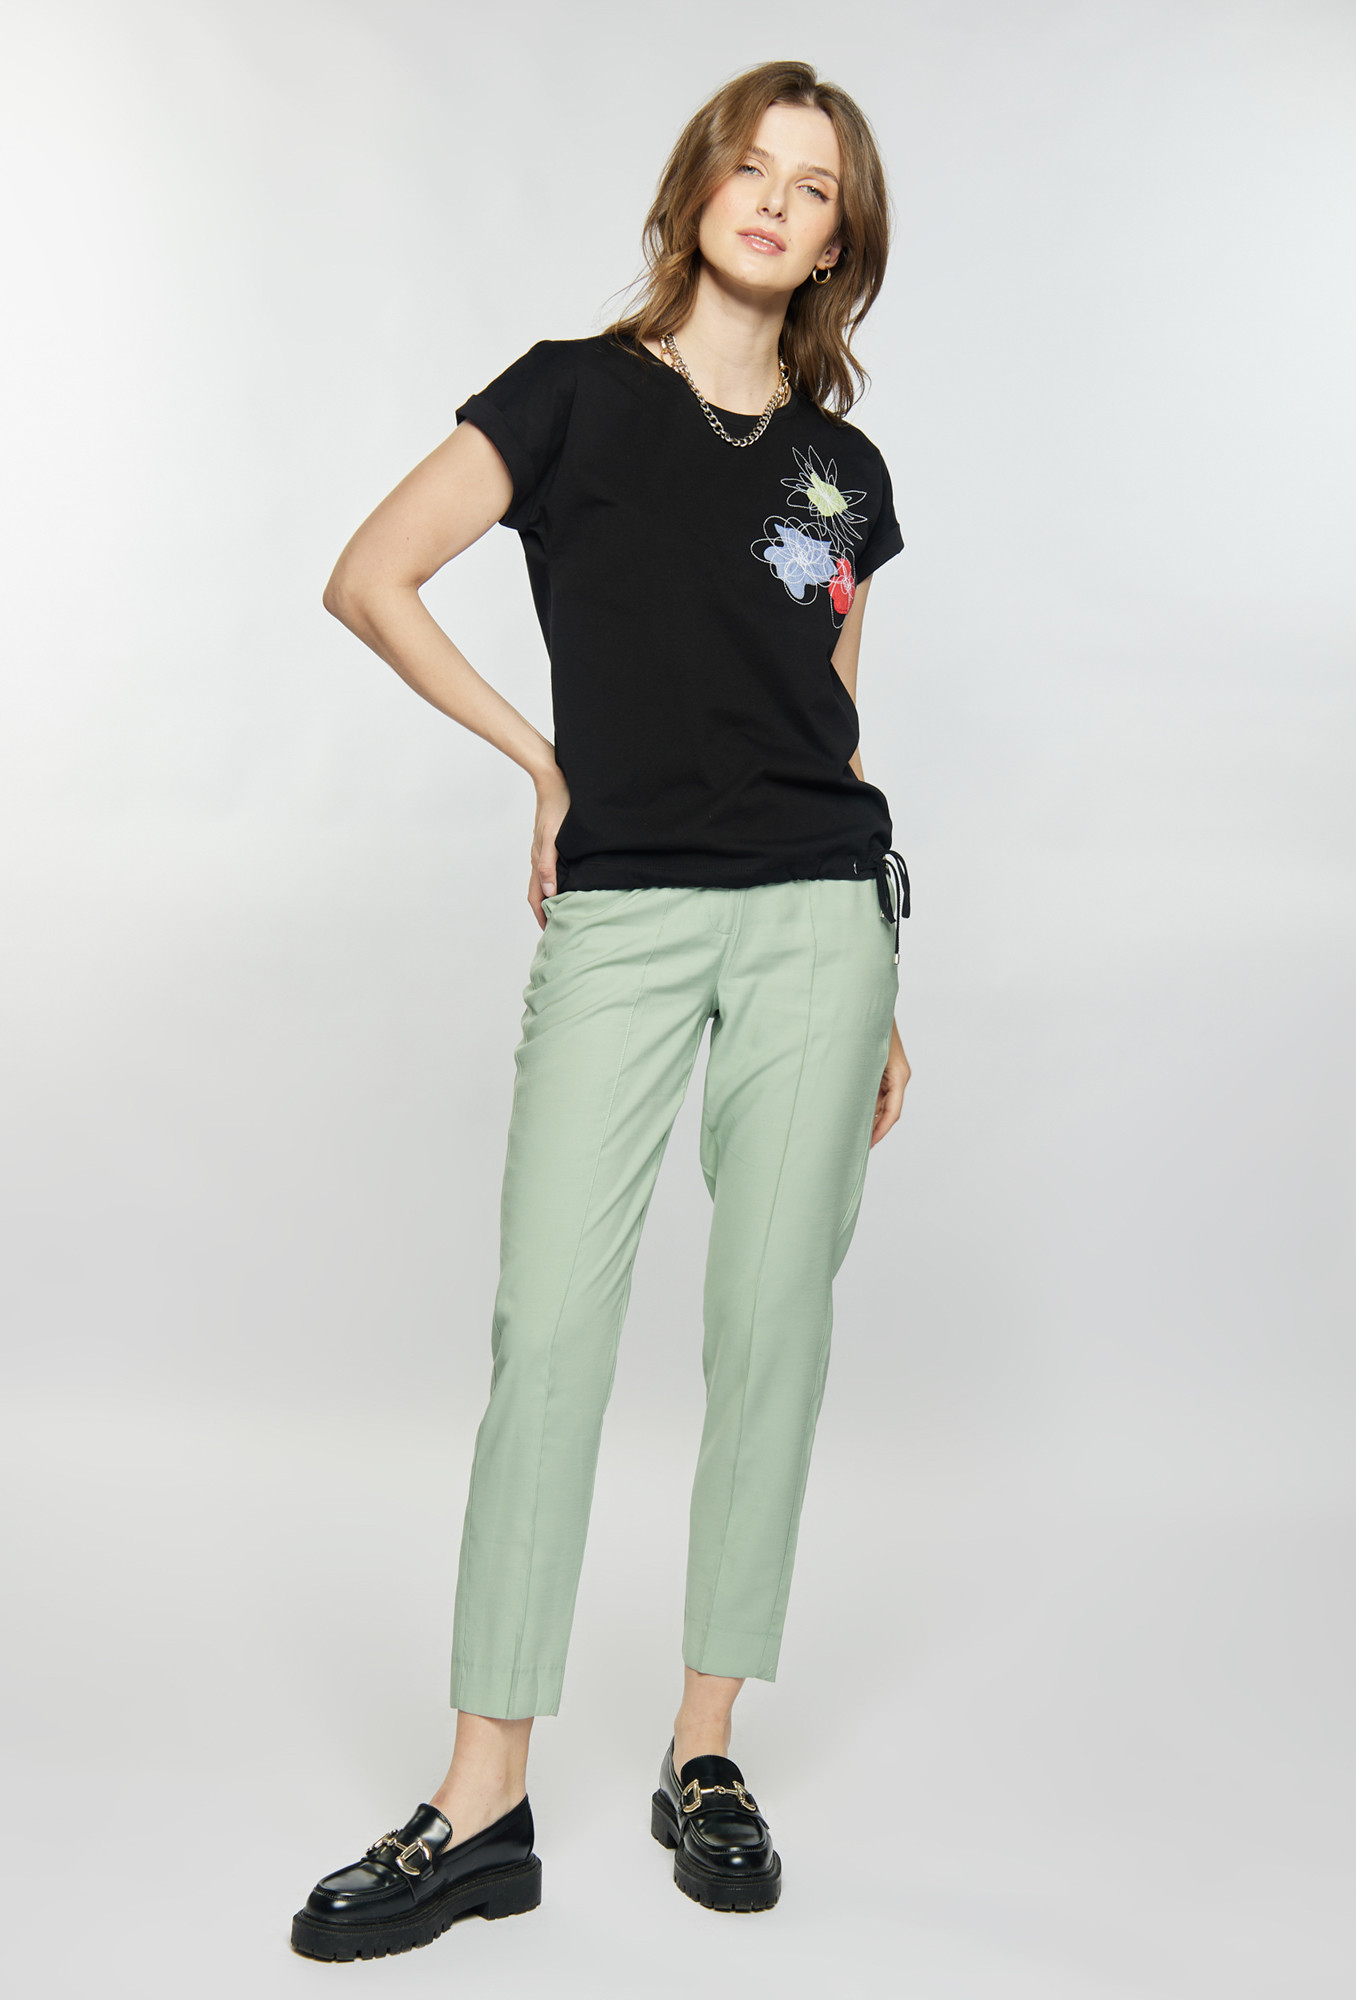 Monnari Halenky Bavlněné tričko s květinovým vzorem Black XL